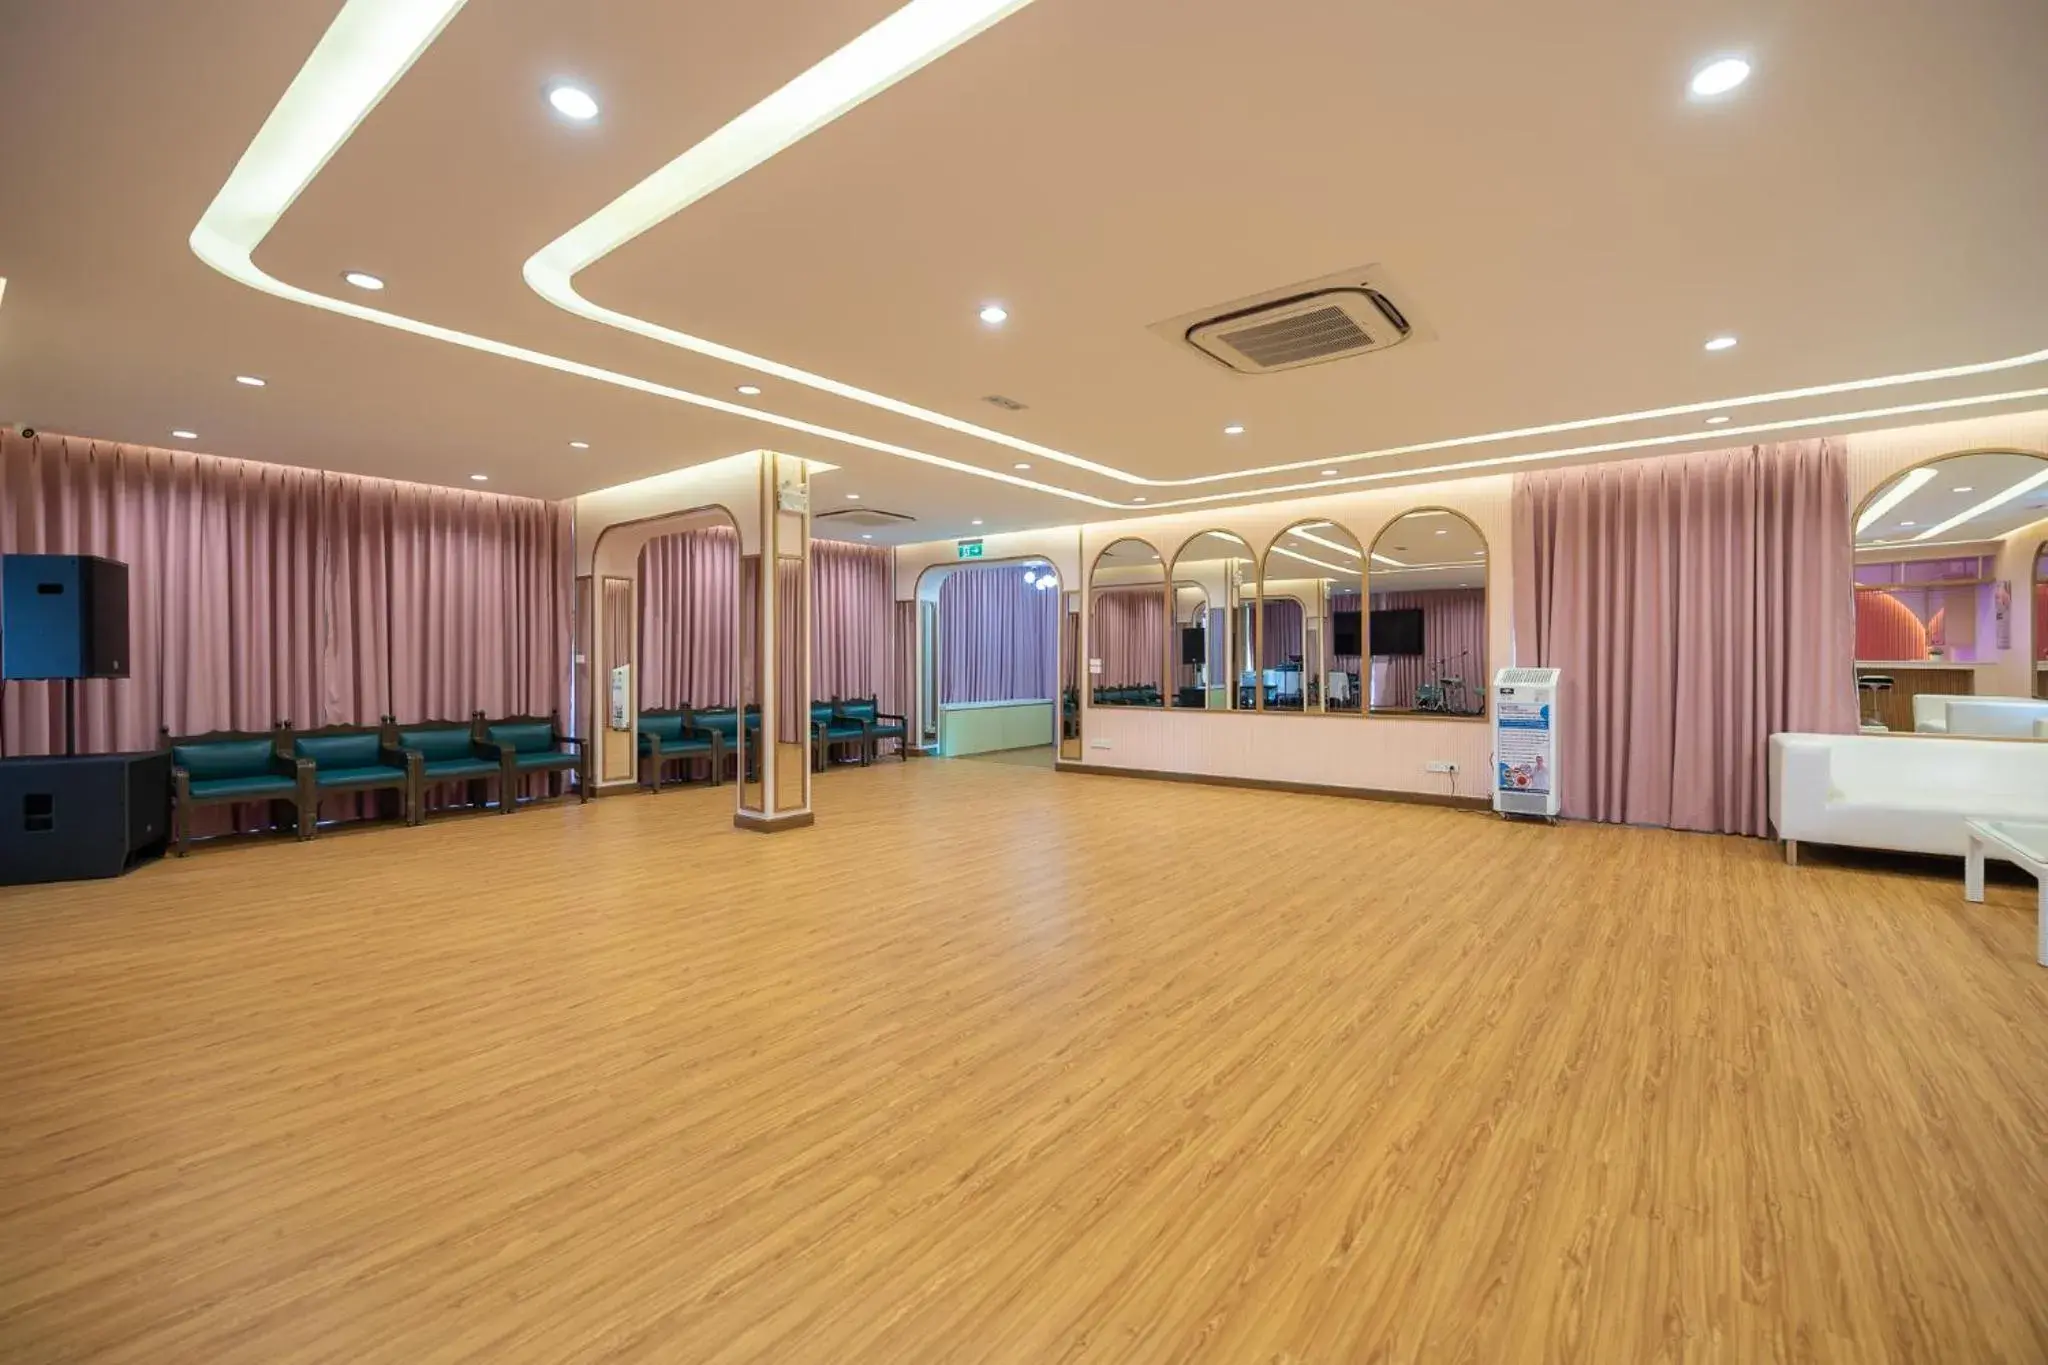 Banquet/Function facilities, Banquet Facilities in Bangkok Rama Hotel